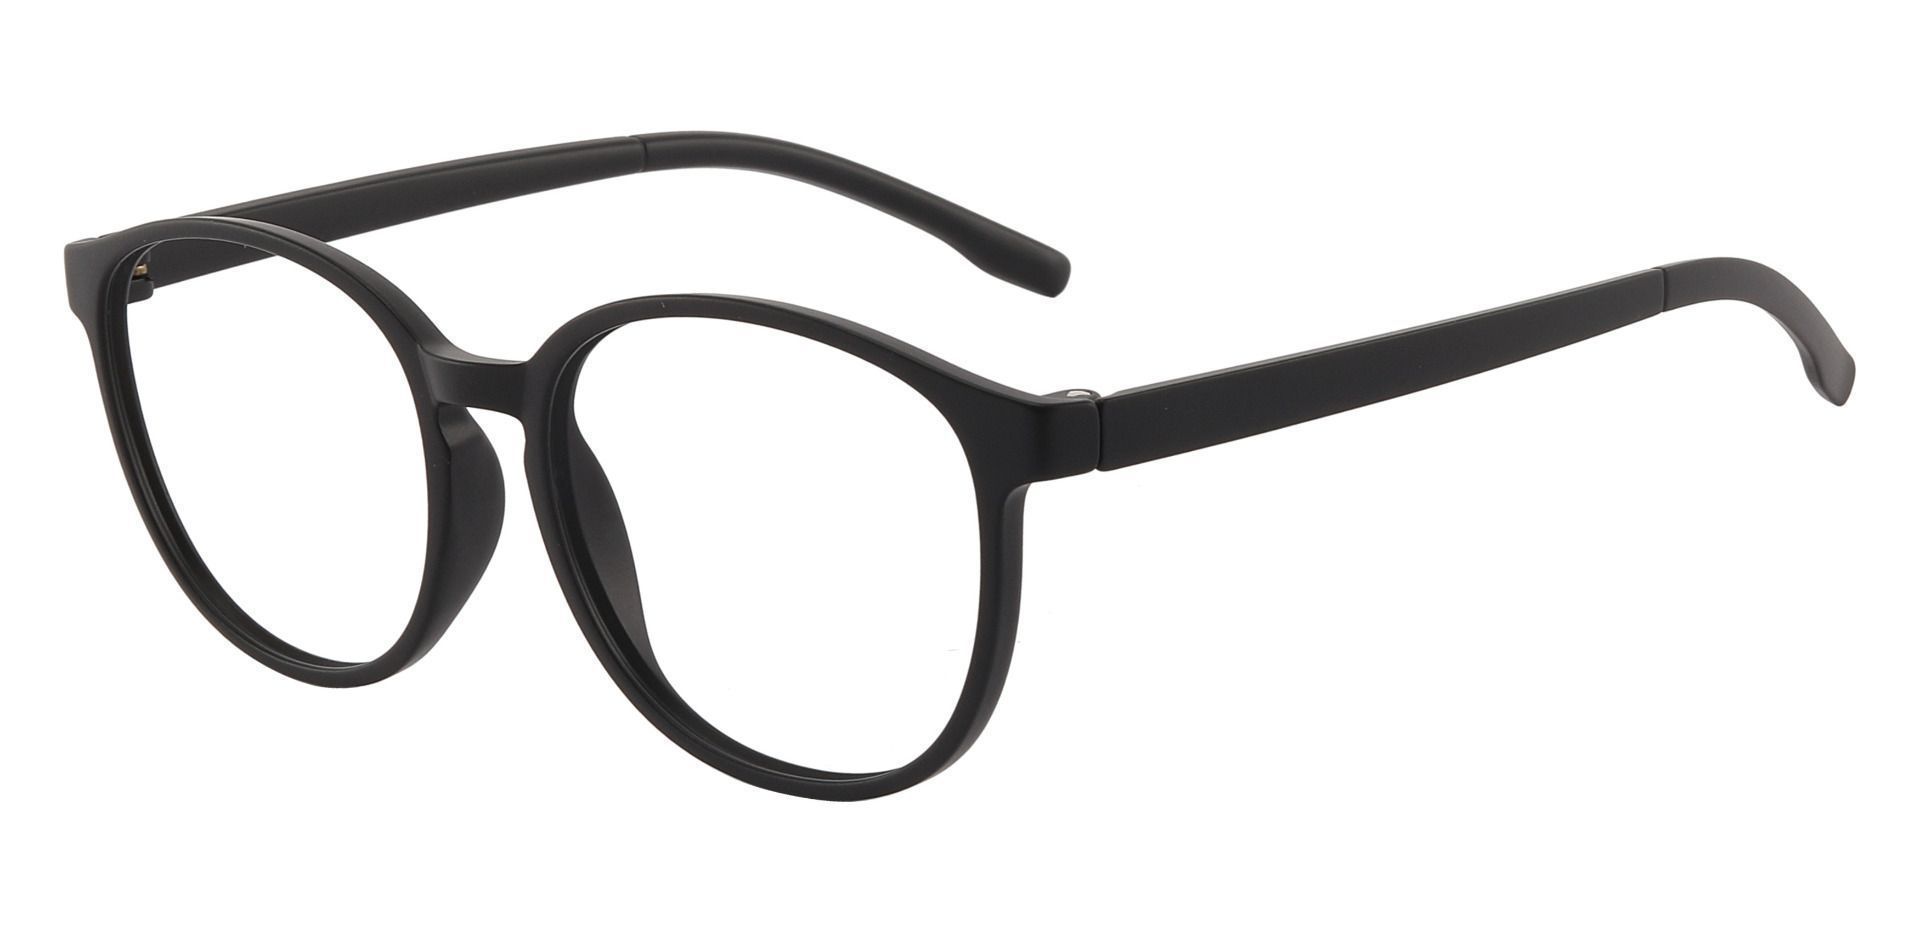 Molasses Oval Prescription Glasses - Black